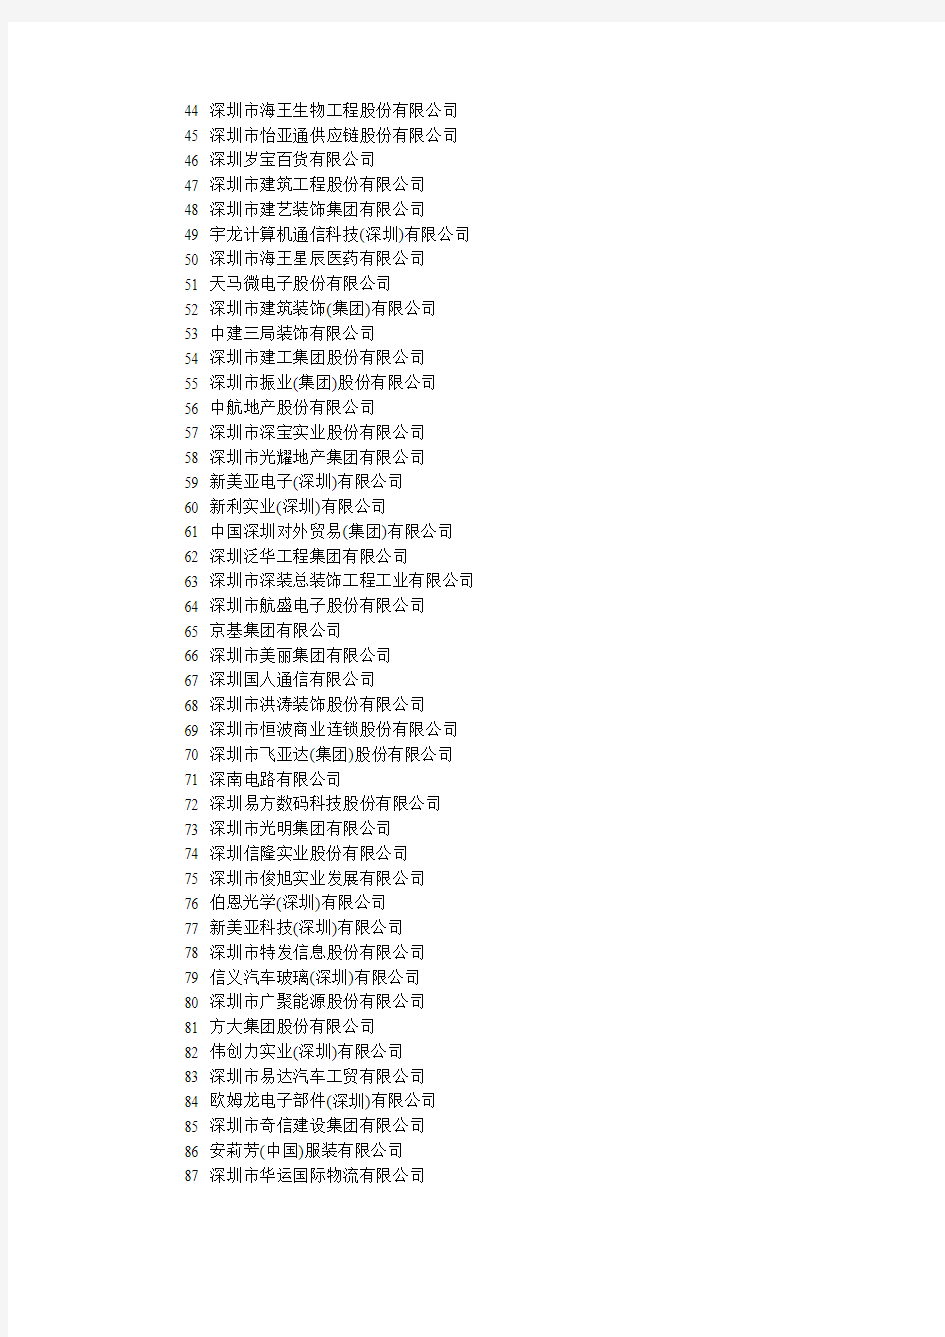 2010年深圳100强企业名单